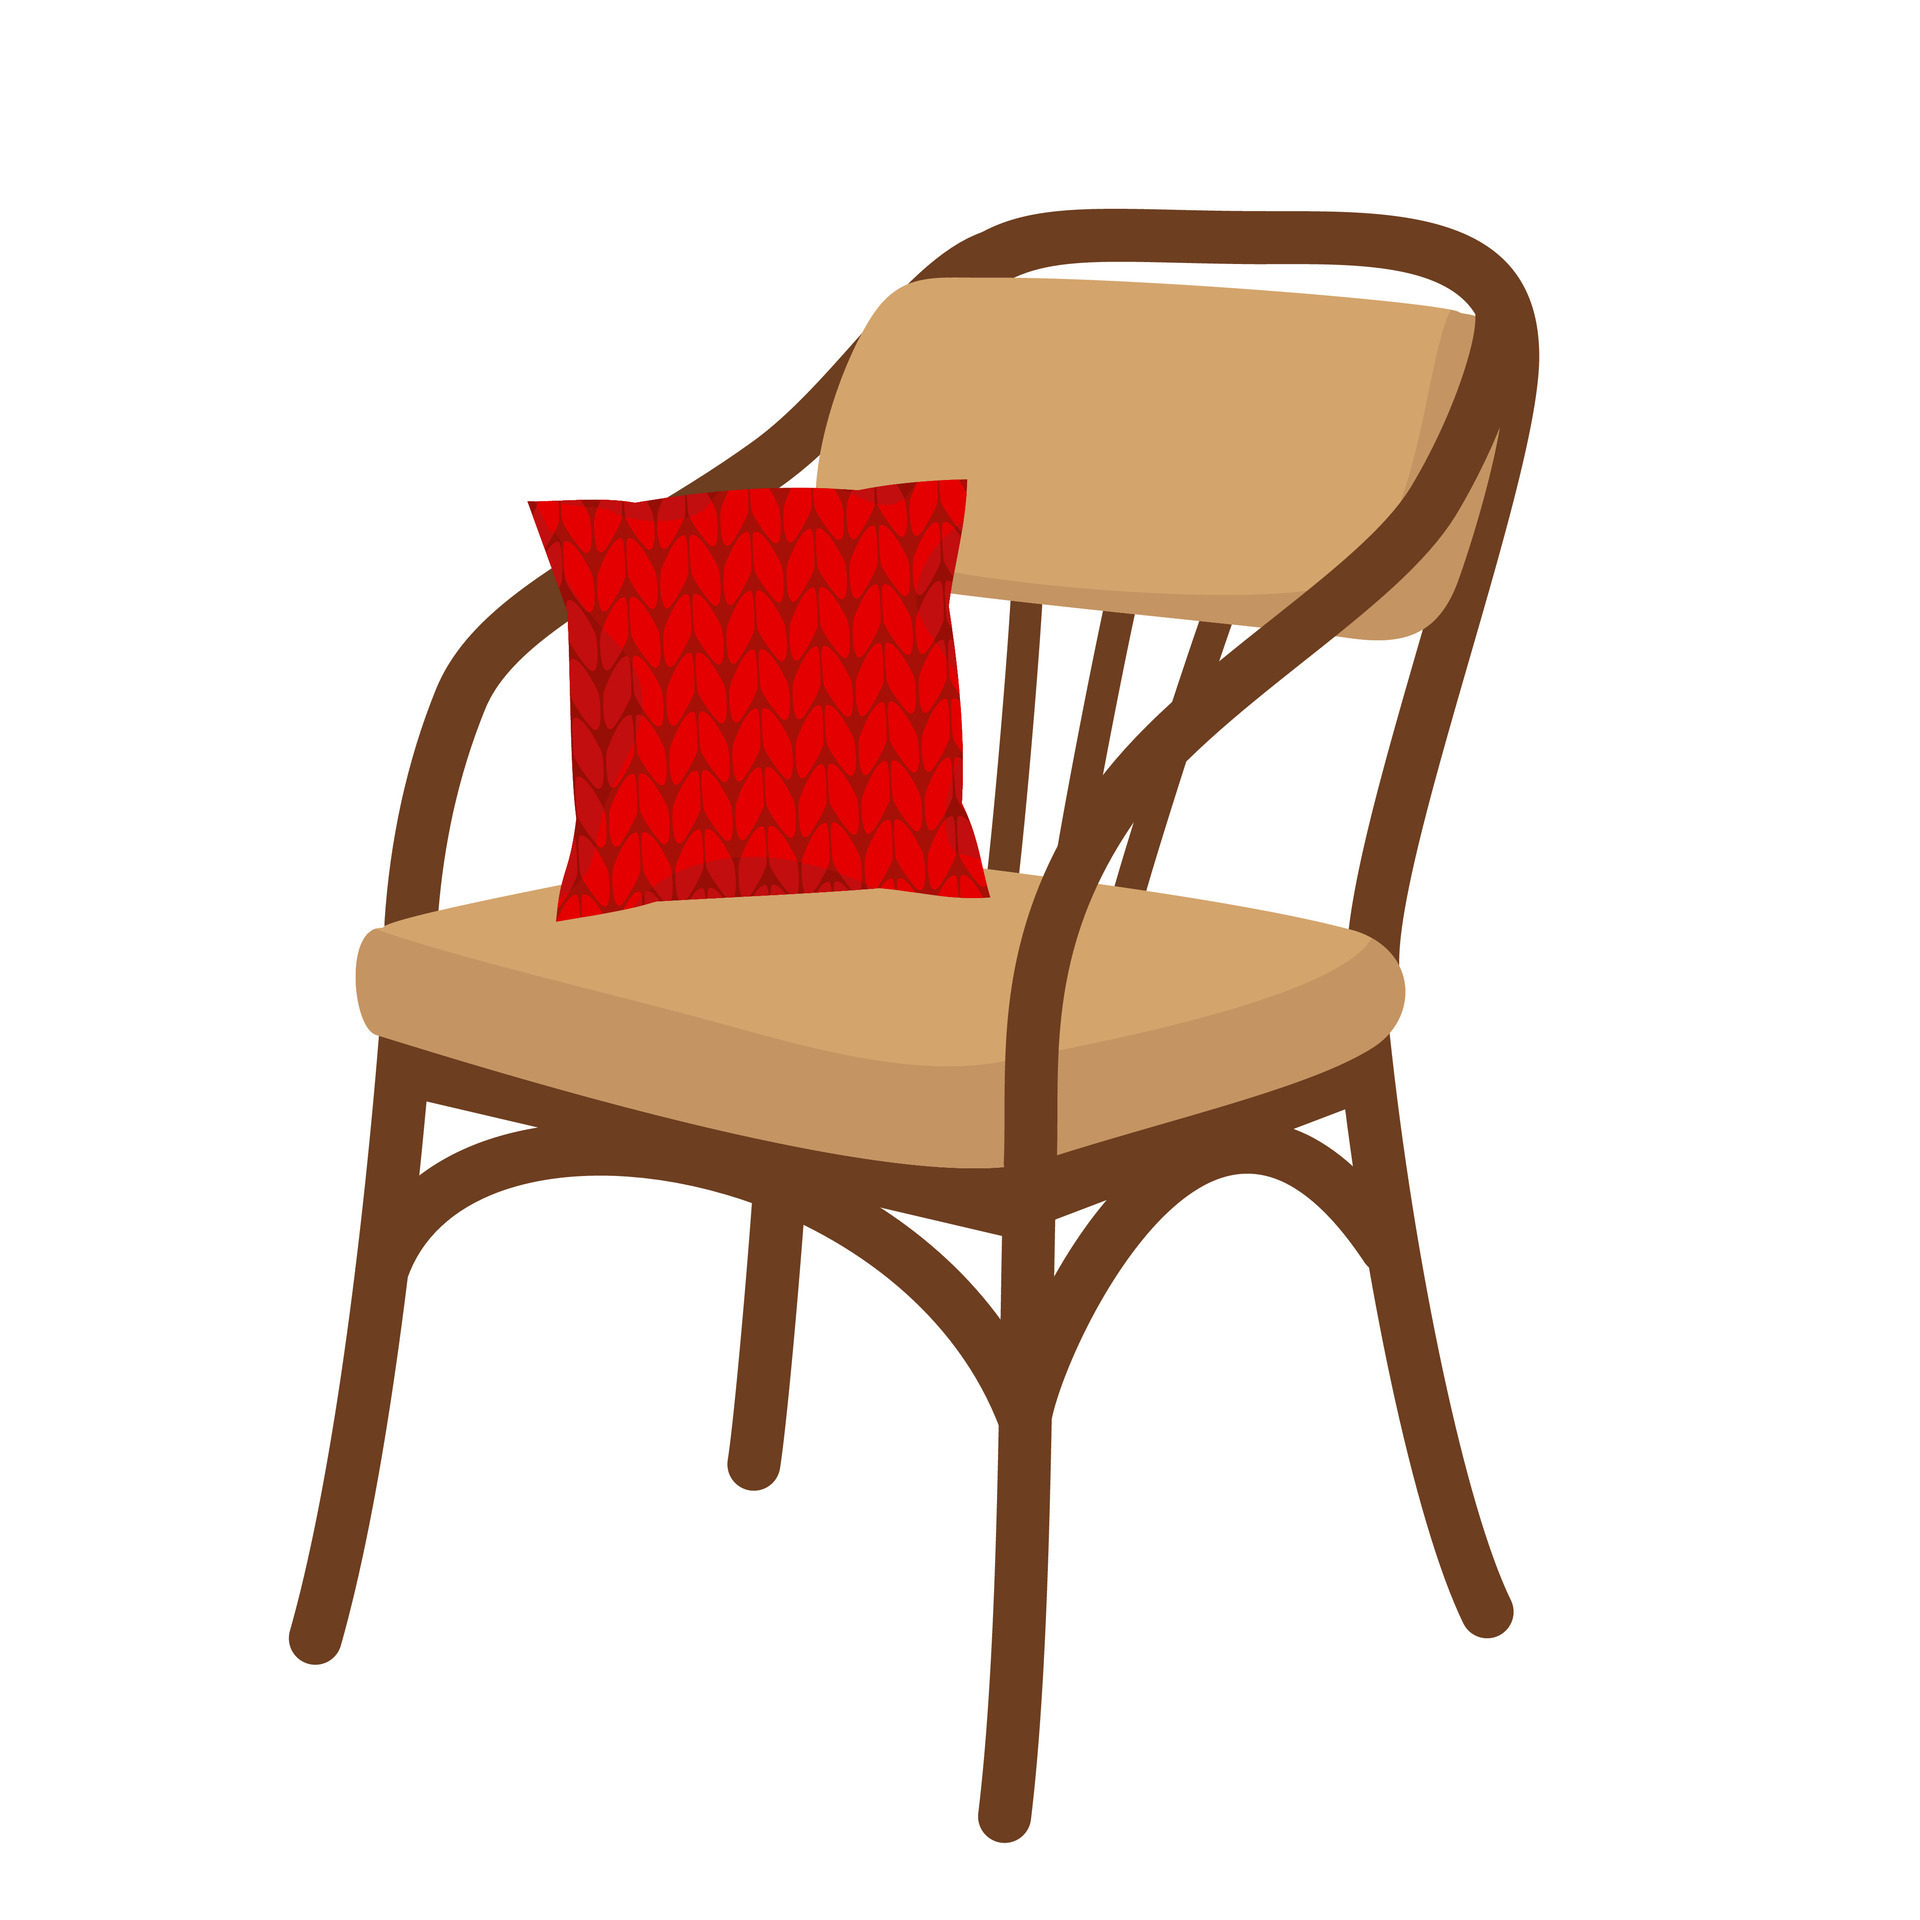 ein Stuhl und ein Kopfkissen. 26153102 Vektor Kunst bei Vecteezy